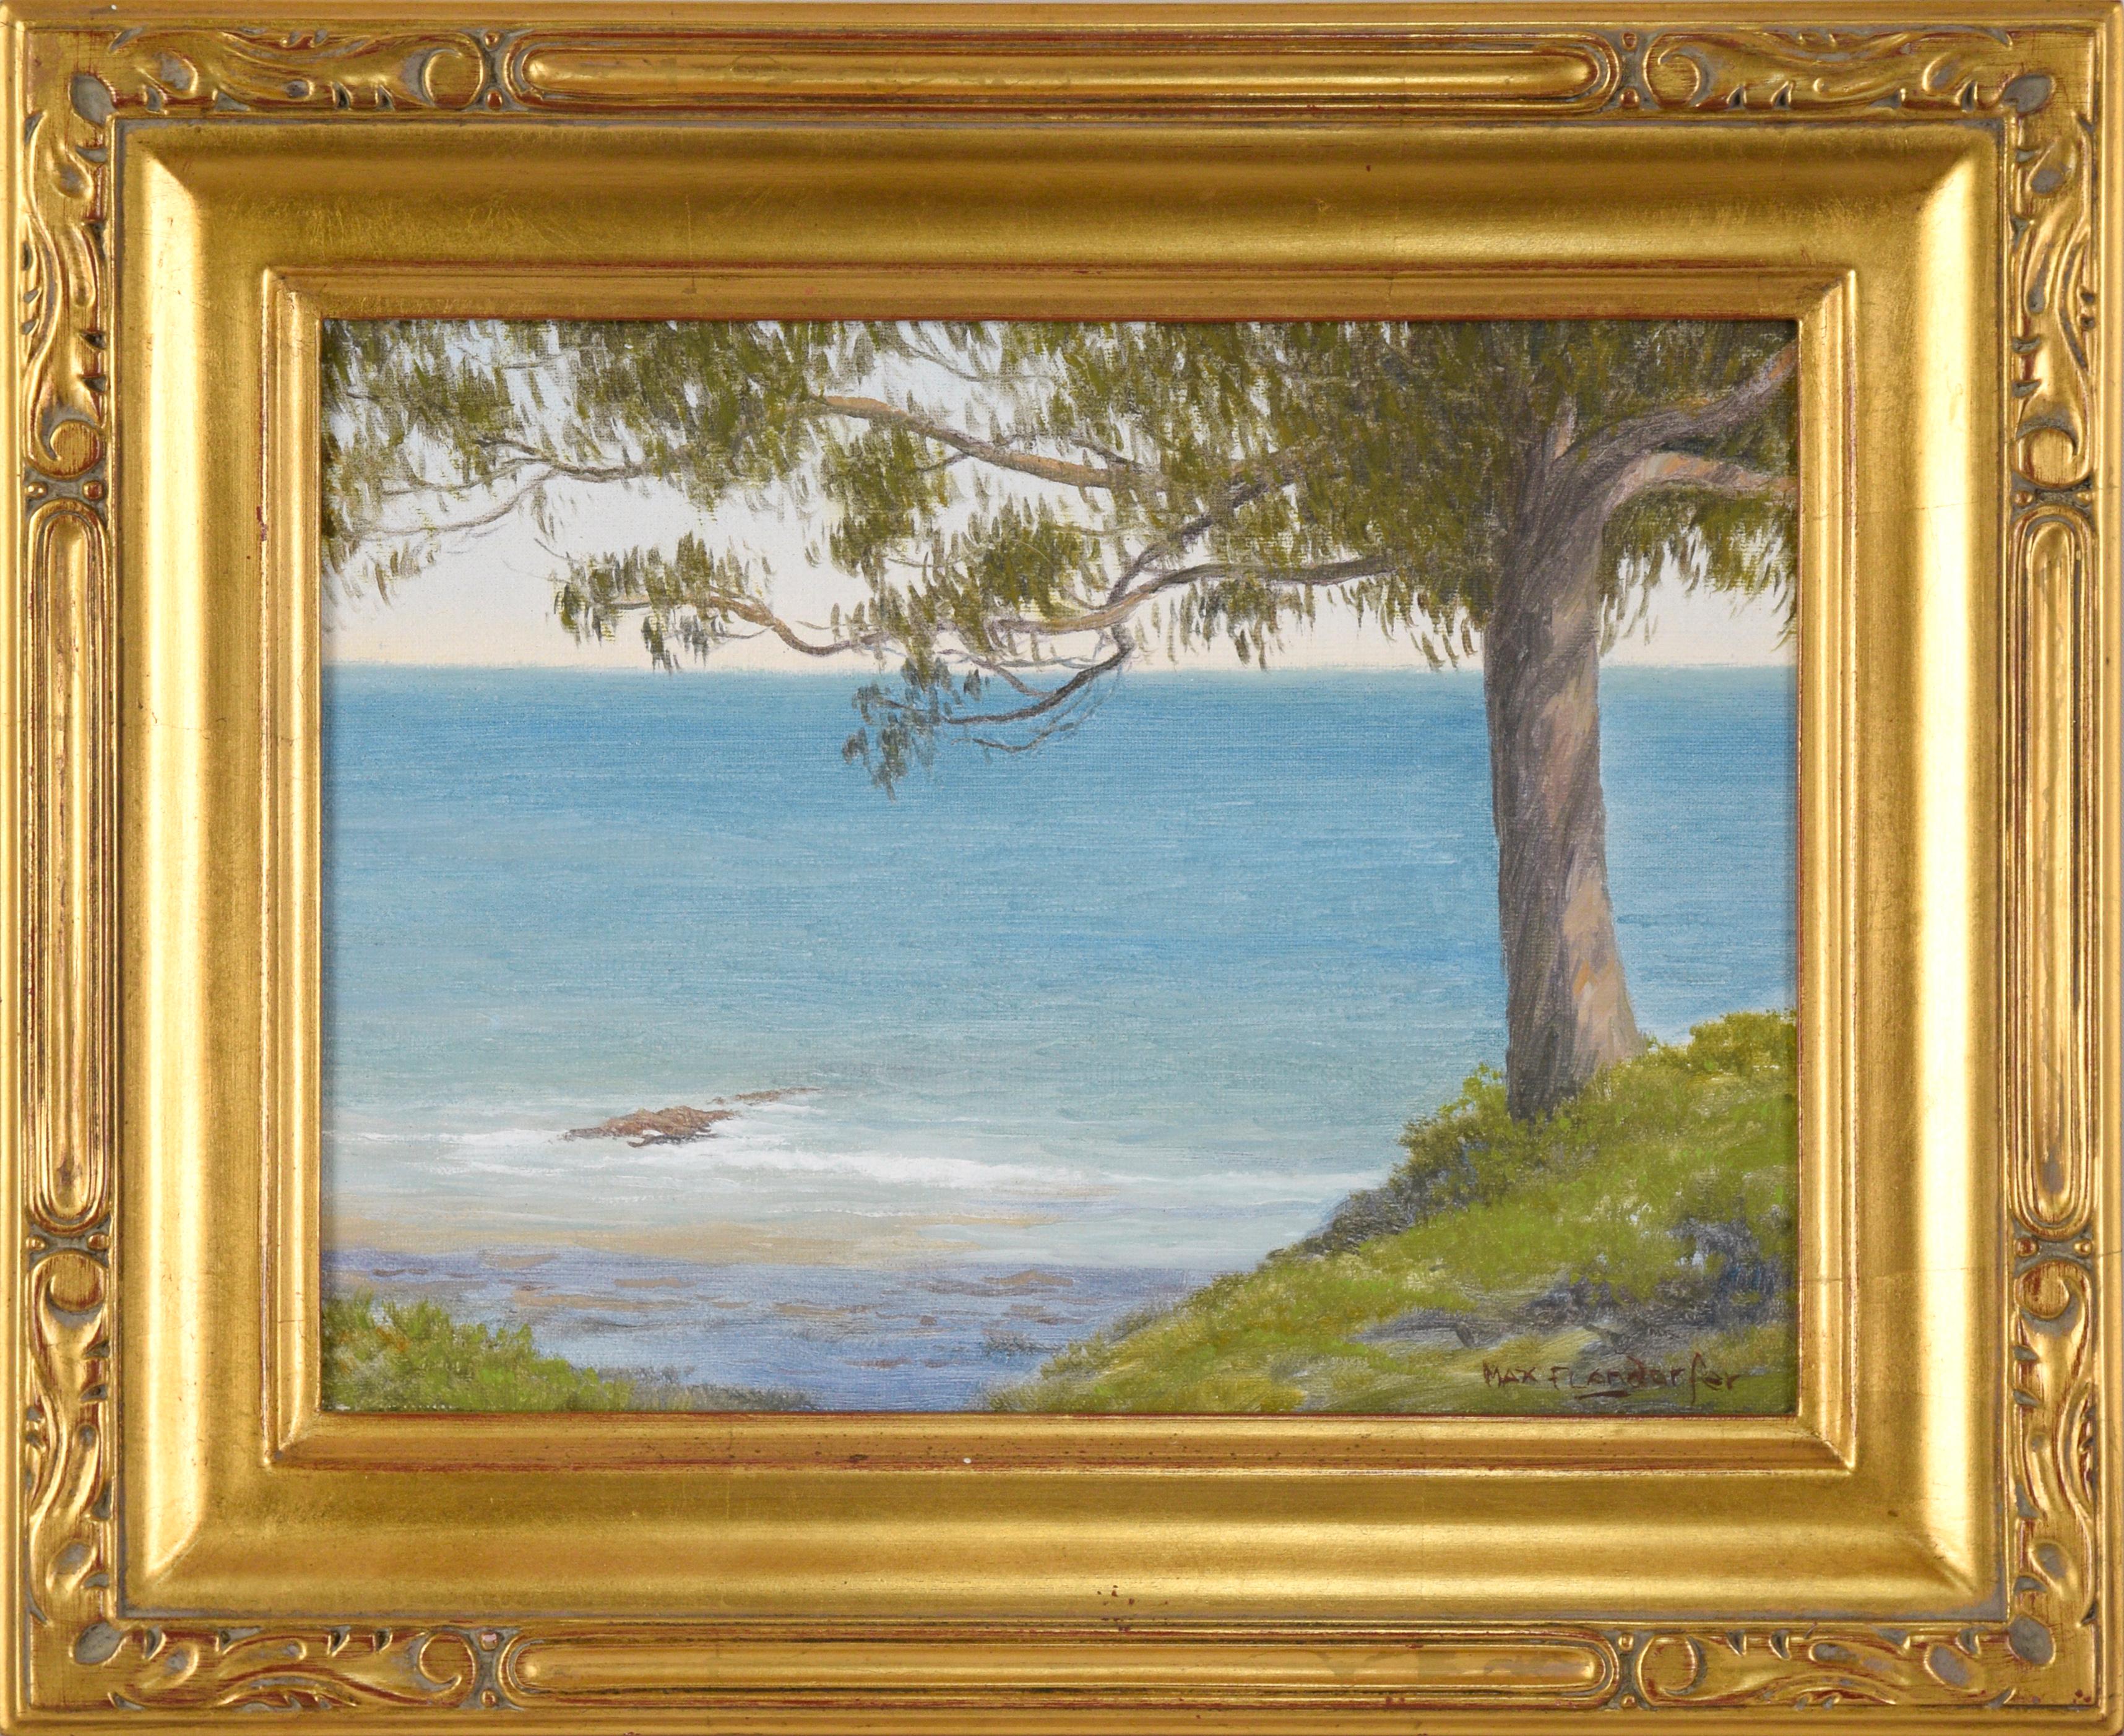 Landscape Painting Max Flandorfer - « West Cliff, Santa Cruz », paysage côtier à l'huile sur lin